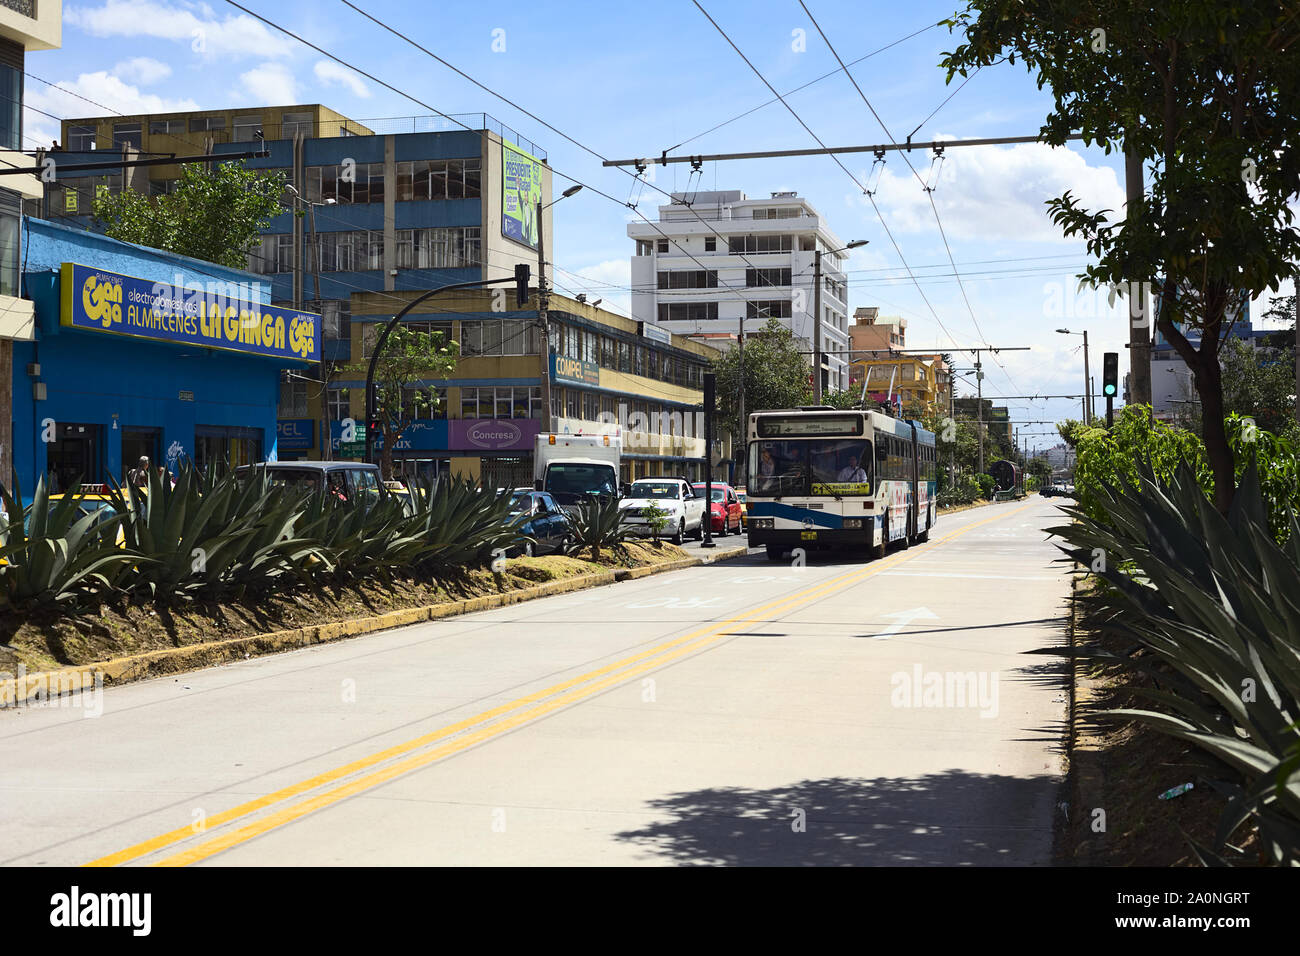 QUITO, ECUADOR - AUGUST 4, 2014: Trole C1 trolleybus of the bus rapid transit system on 10 de Agosto Avenue in Quito, Ecuador Stock Photo